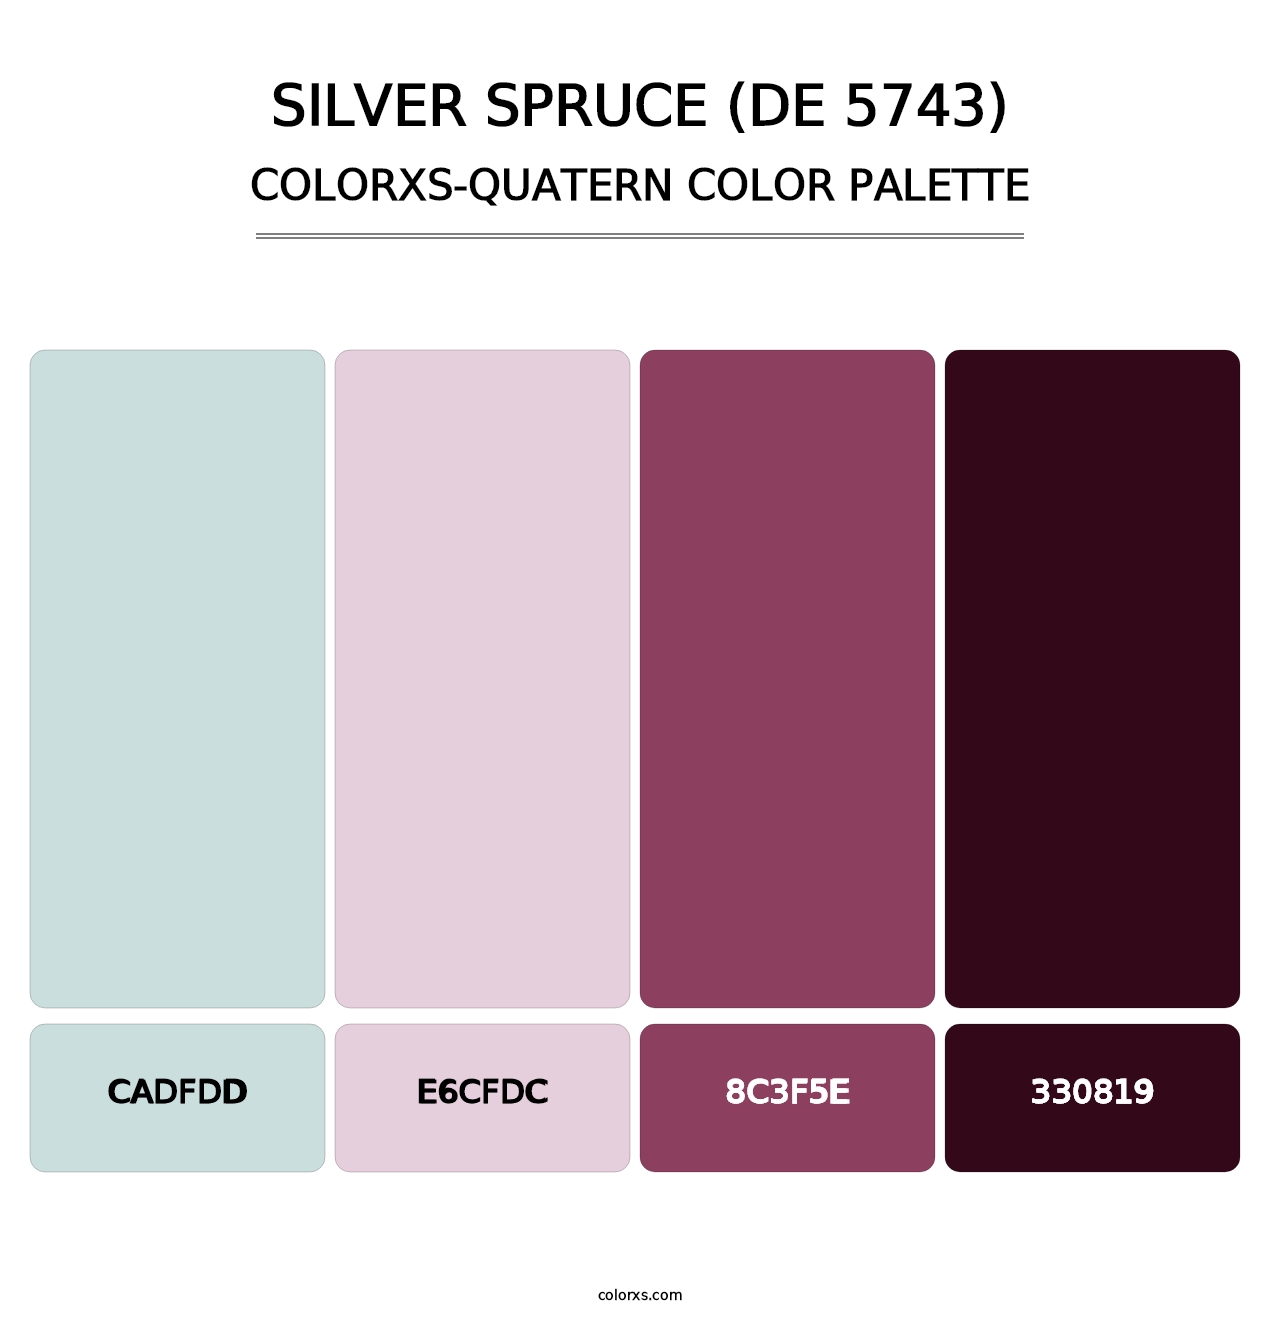 Silver Spruce (DE 5743) - Colorxs Quatern Palette